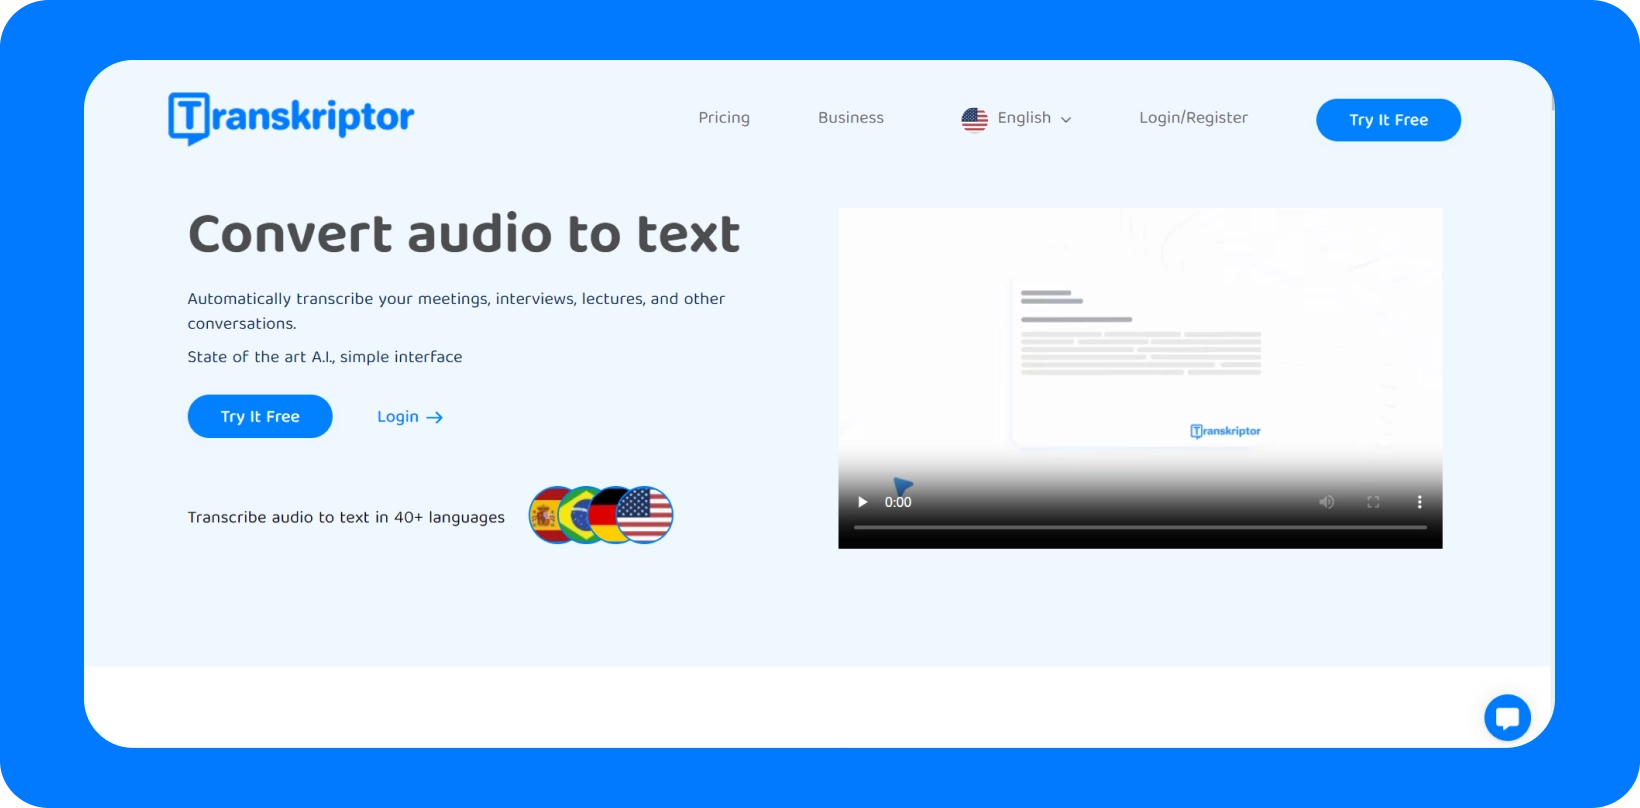 อินเทอร์เฟซ Transkriptor แสดงบริการ 'แปลงเสียงเป็นข้อความ' พร้อมการสนับสนุนหลายภาษา